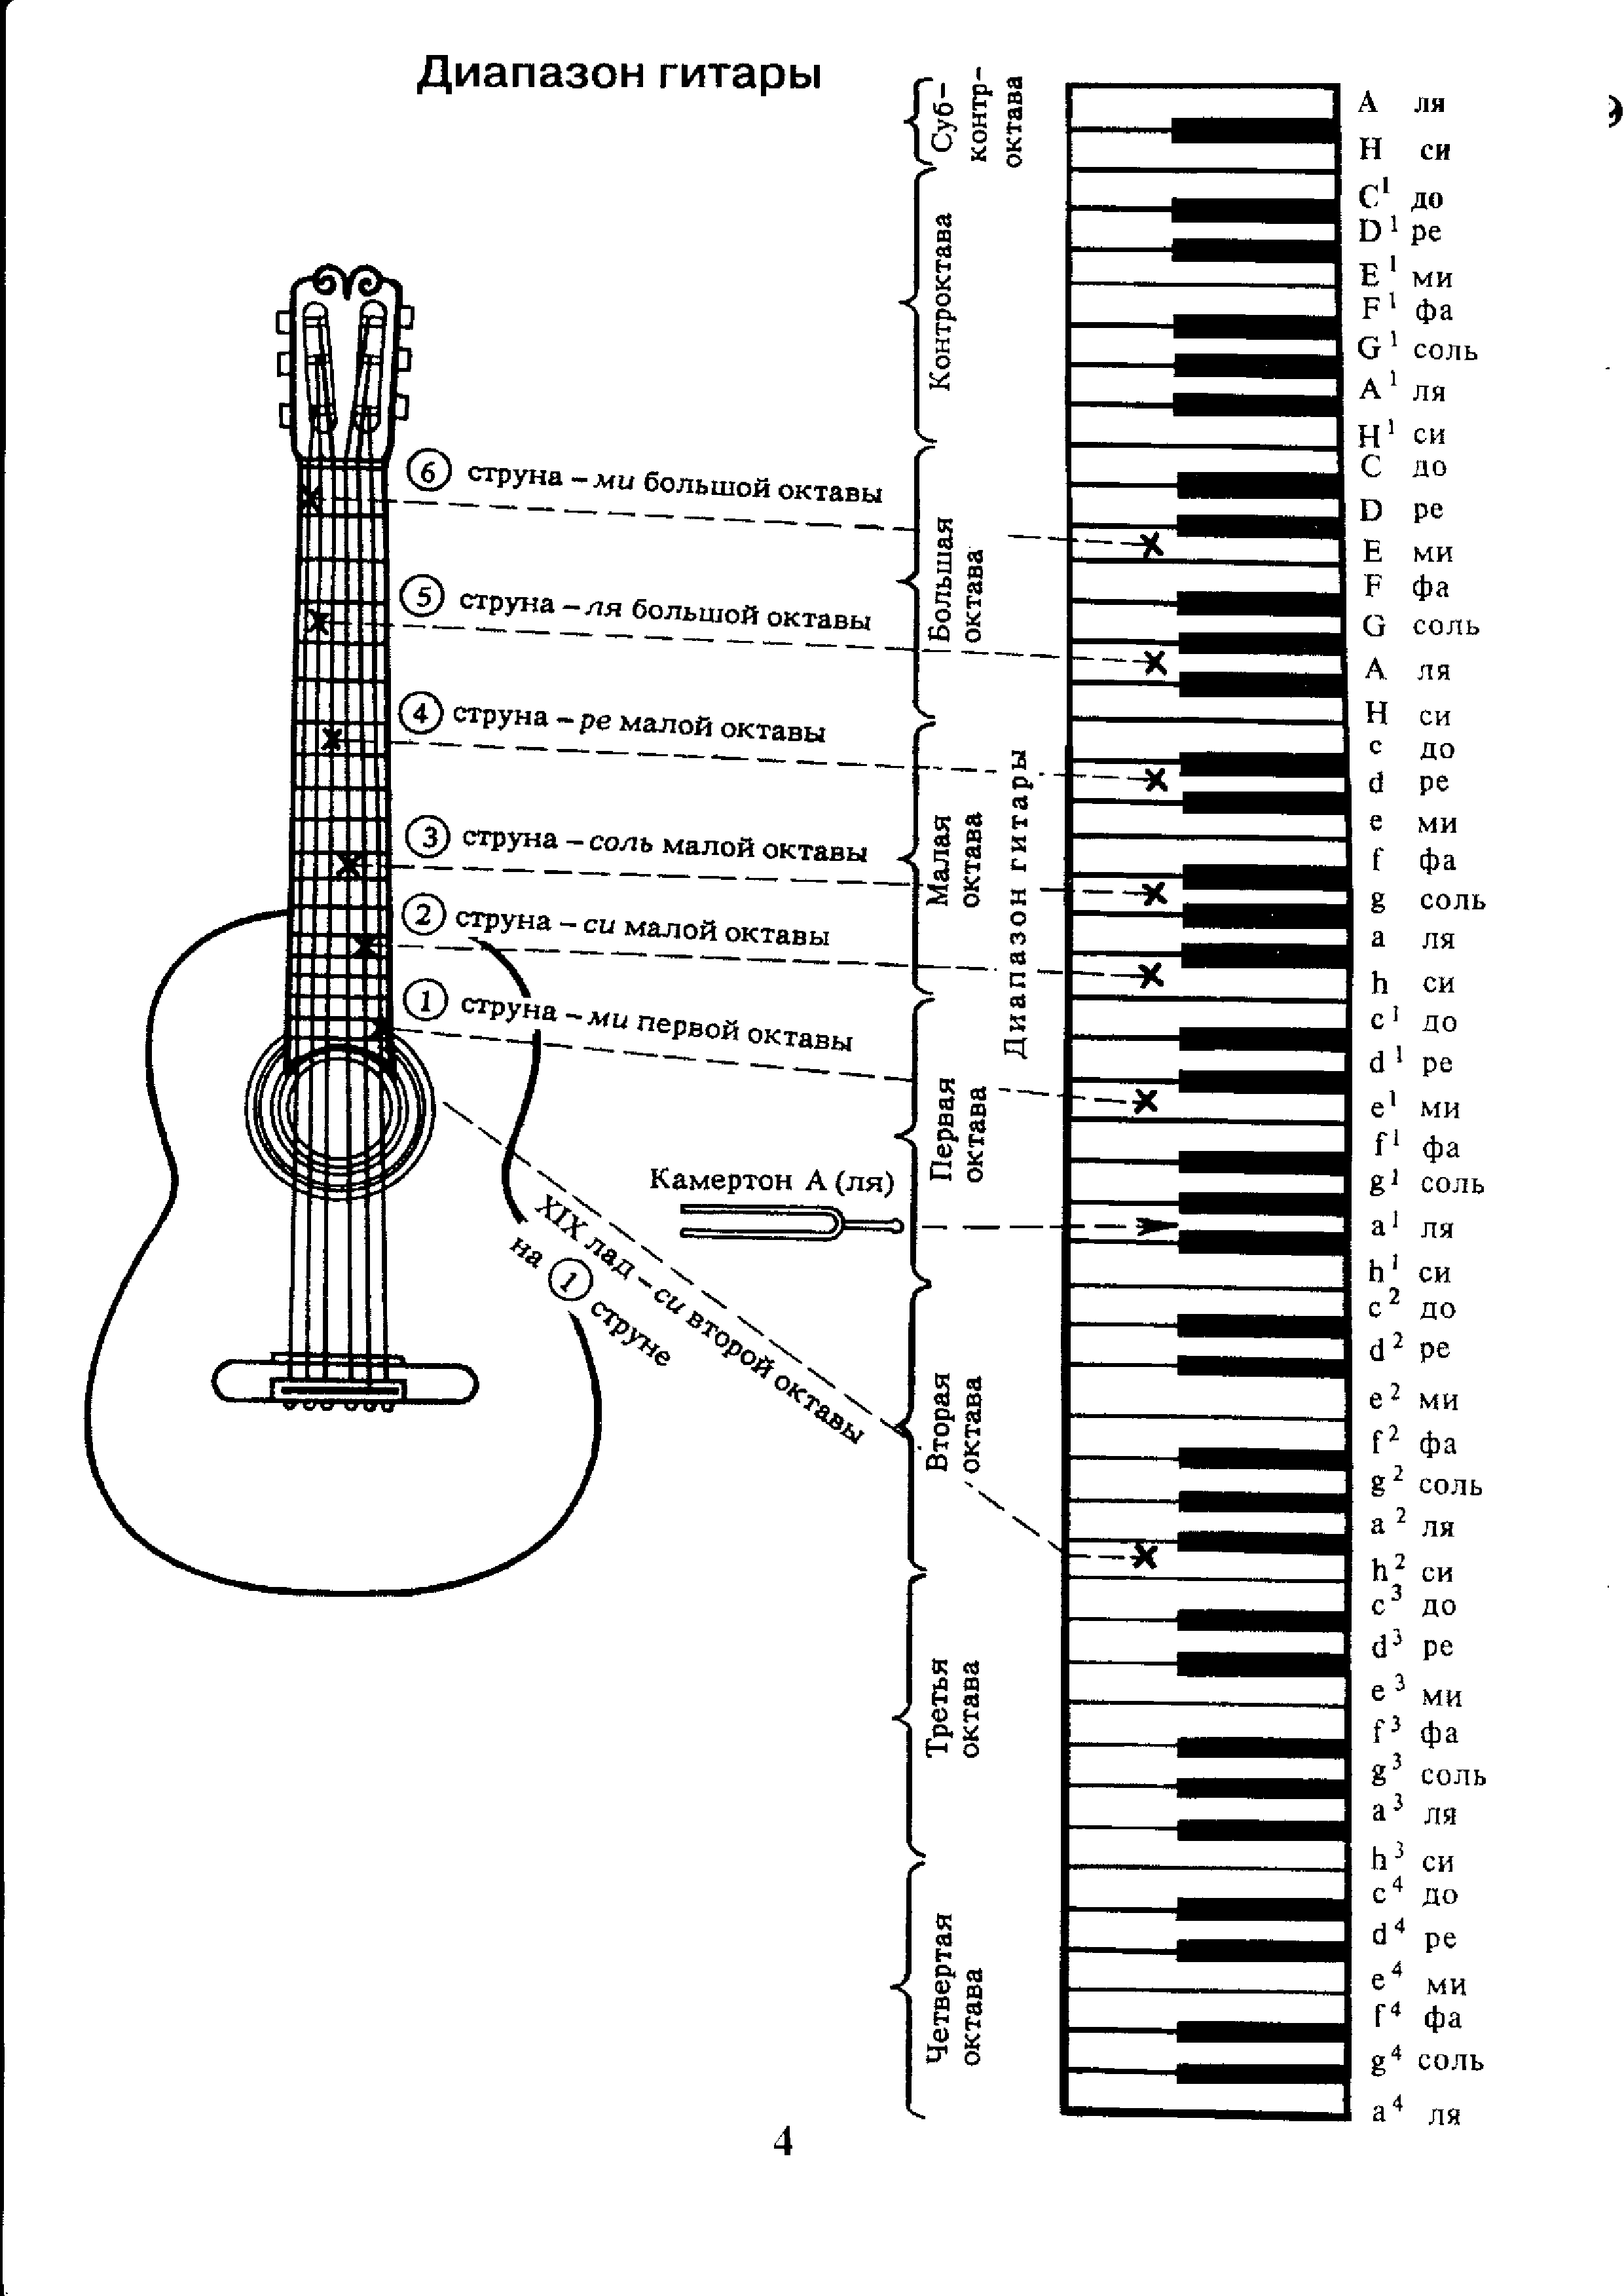 Как научиться играть на шестиструнной гитаре. Аппликатура аккордов для гитары 6 струн для начинающих. Ноты на гитарном грифе 6 струнной. Лады на 6 струнной гитаре для начинающих. Схема гитары классической 6 струнной.